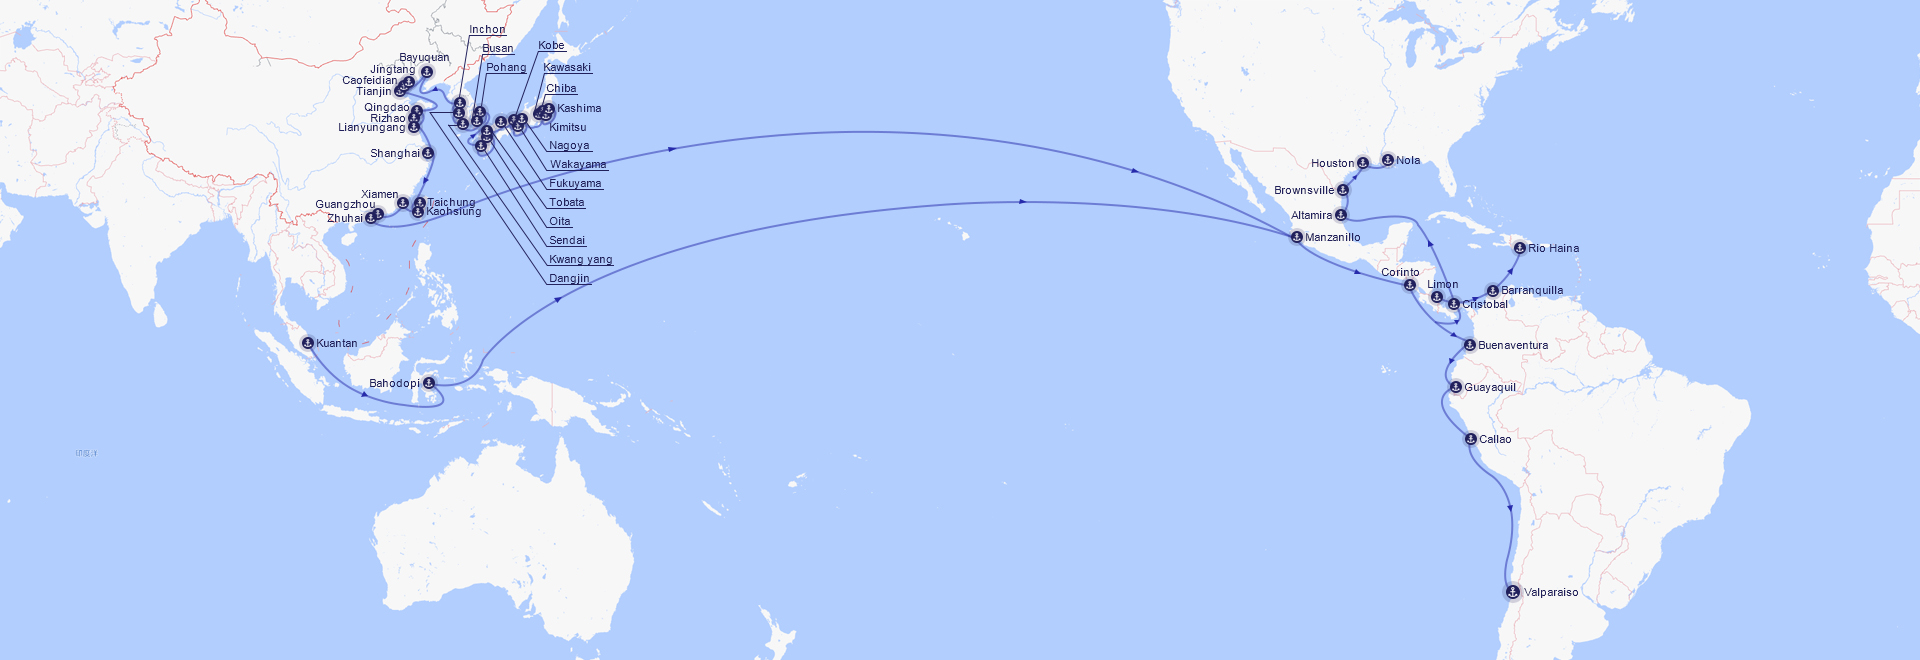 远东至美西/美湾/加勒比航线